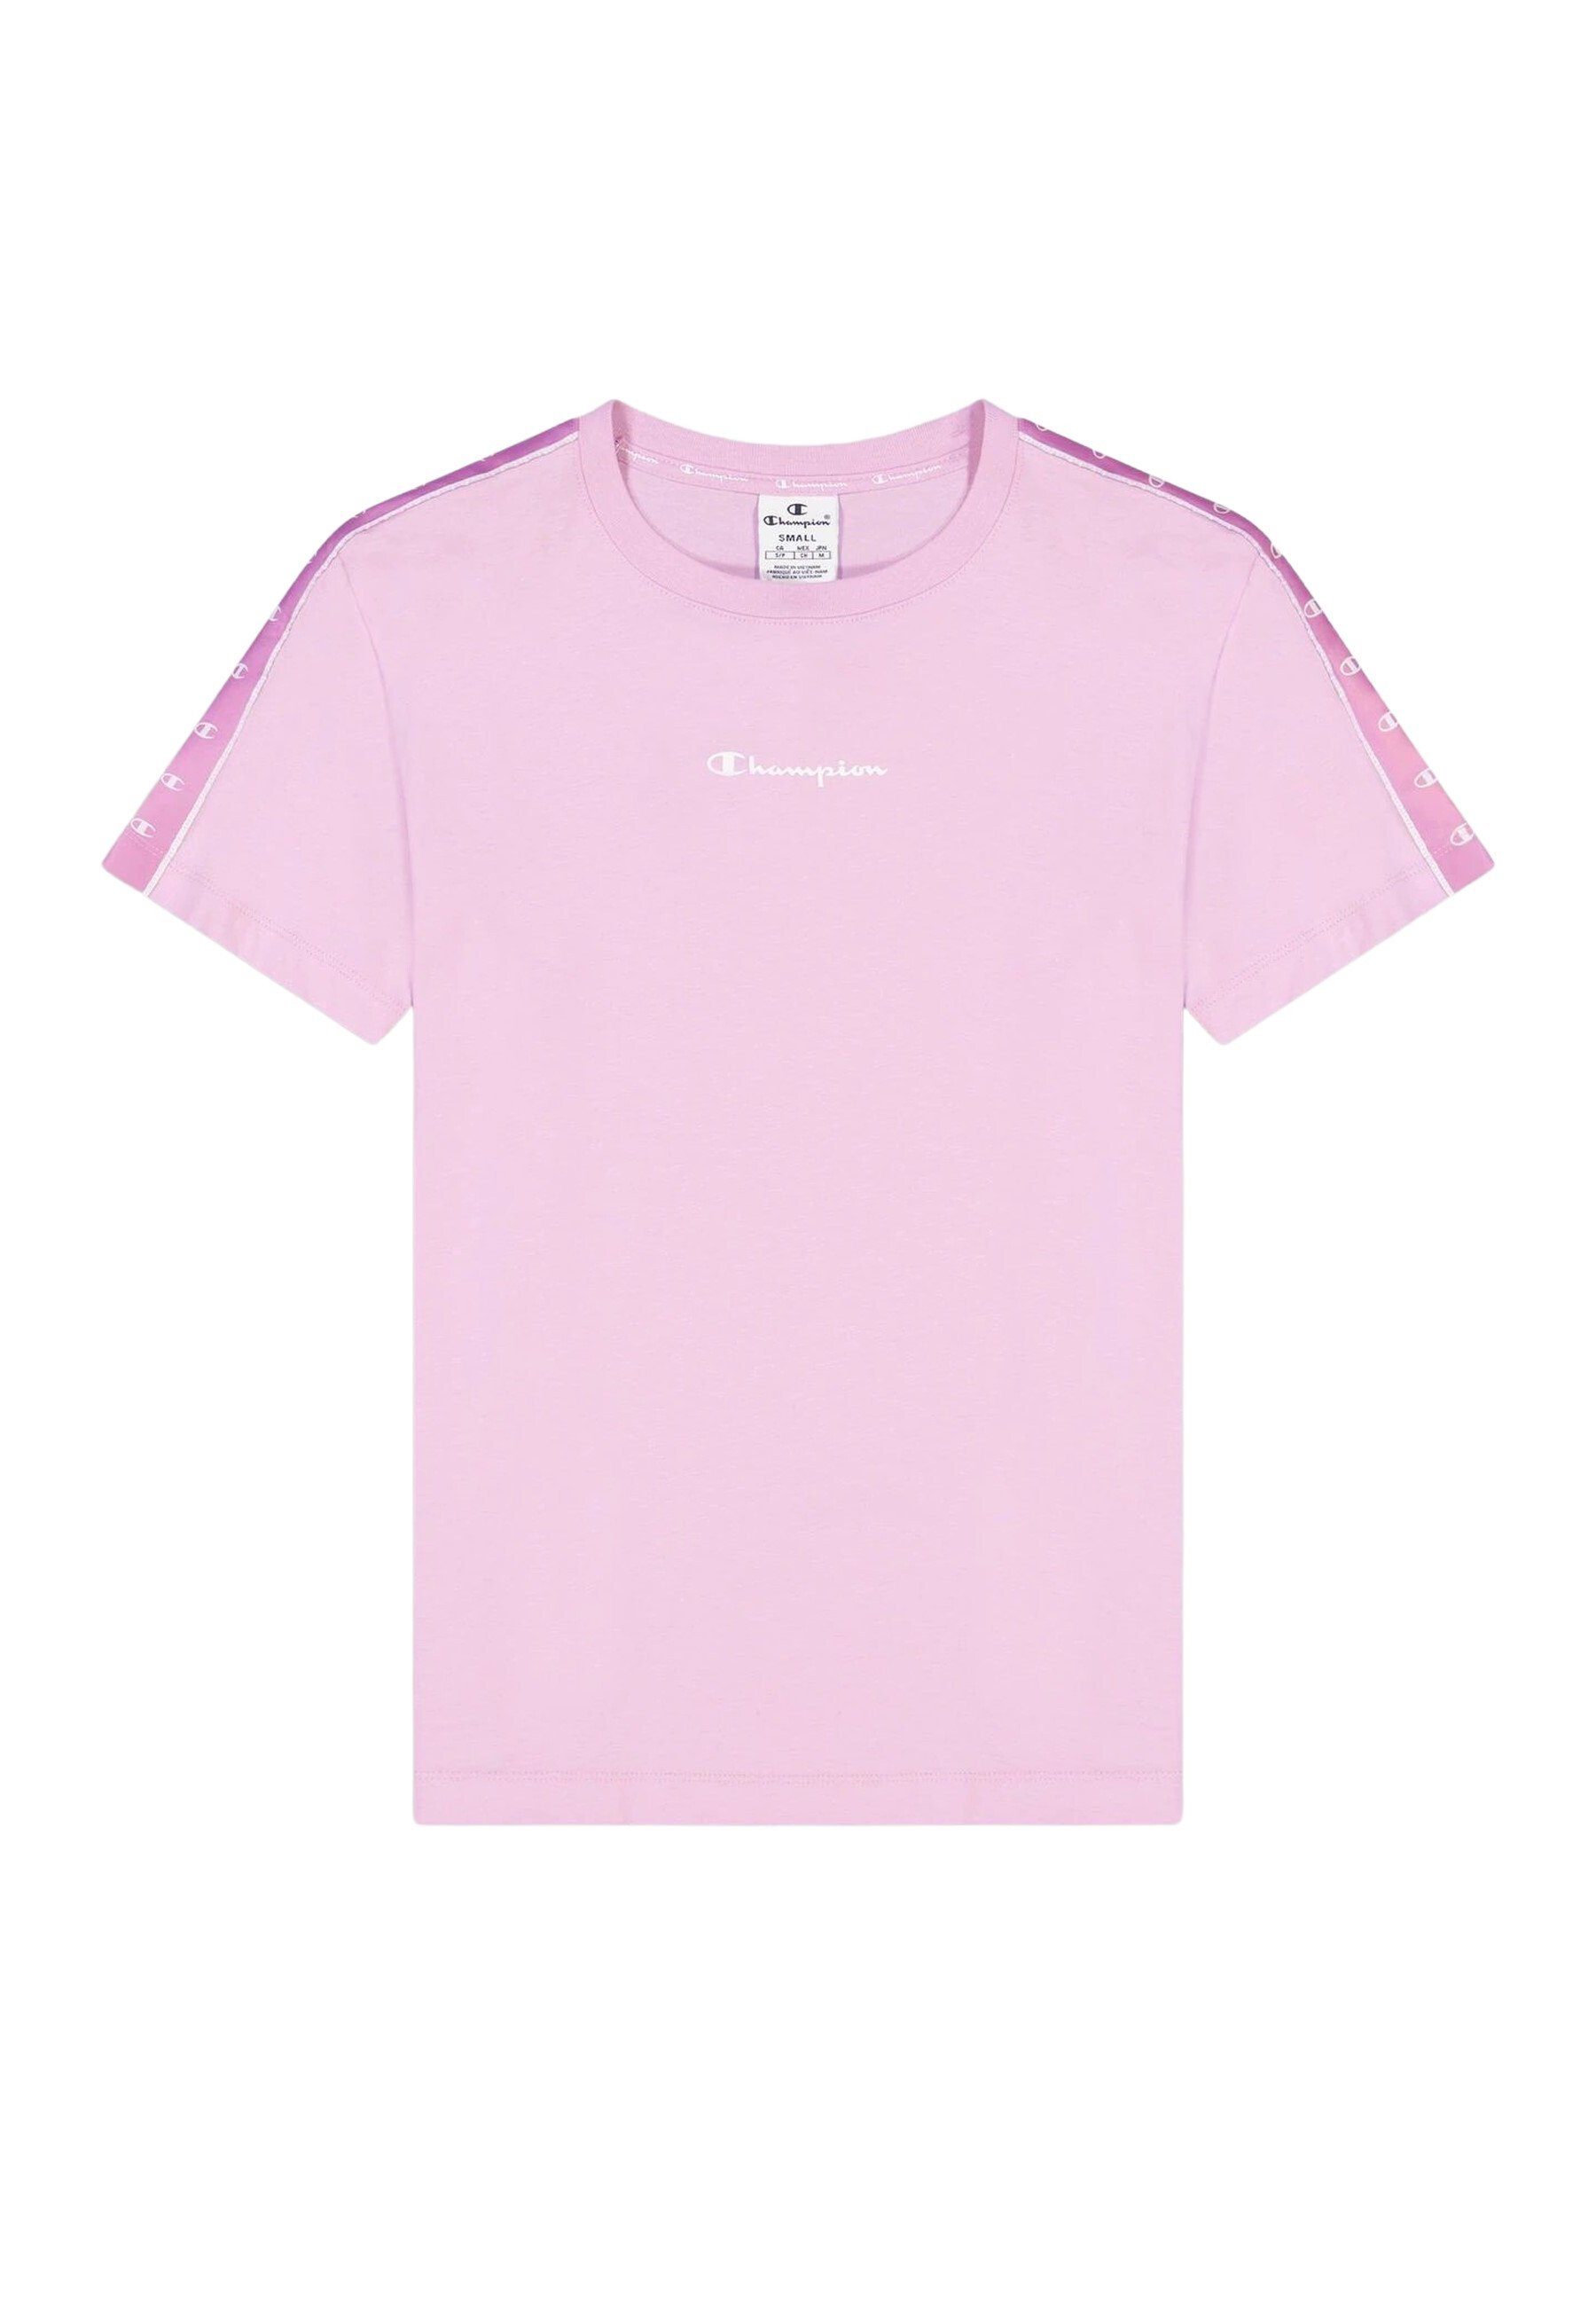 Shirt pink mit Champion T-Shirt Rundhals-T-Shirt Baumwolle aus